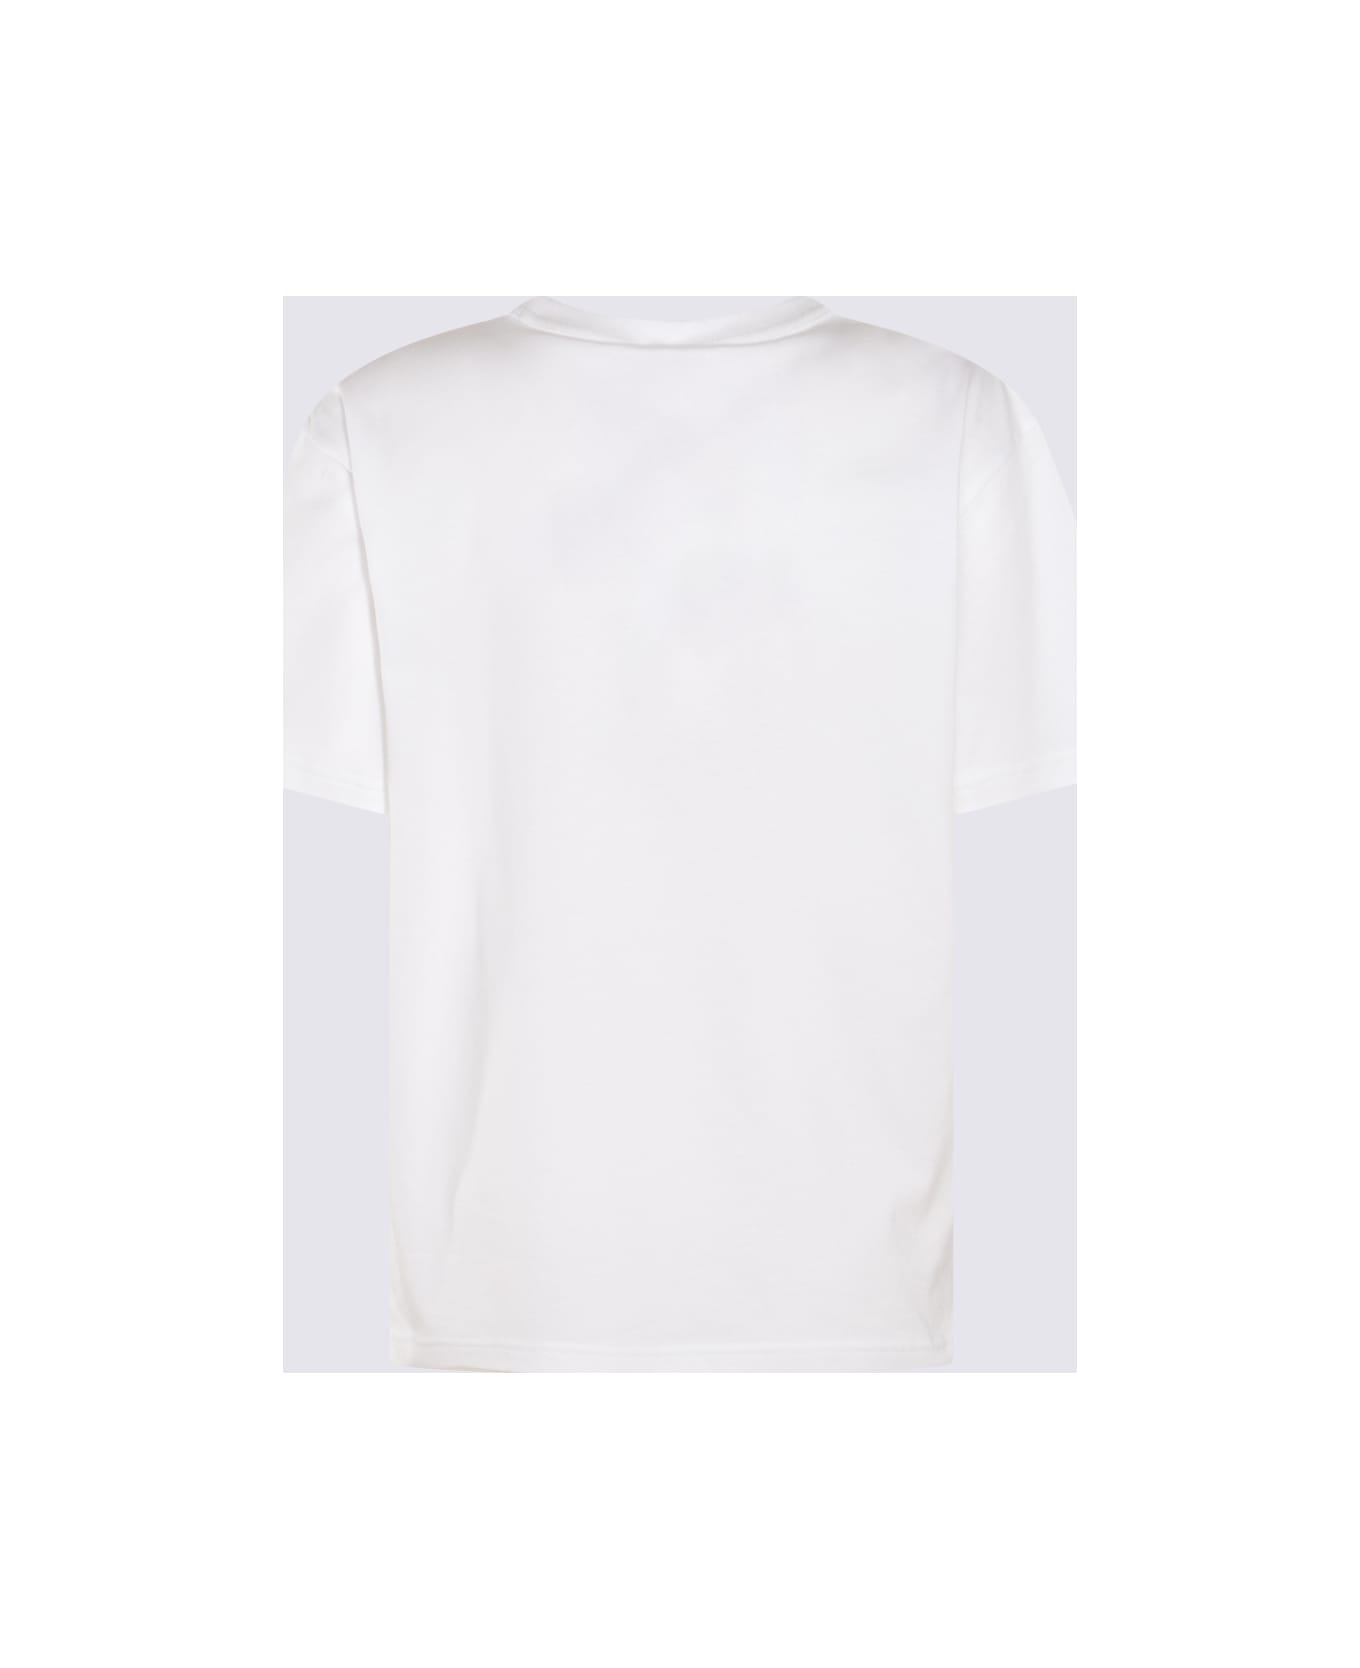 Alexander Wang White Cotton T-shirt - White Tシャツ